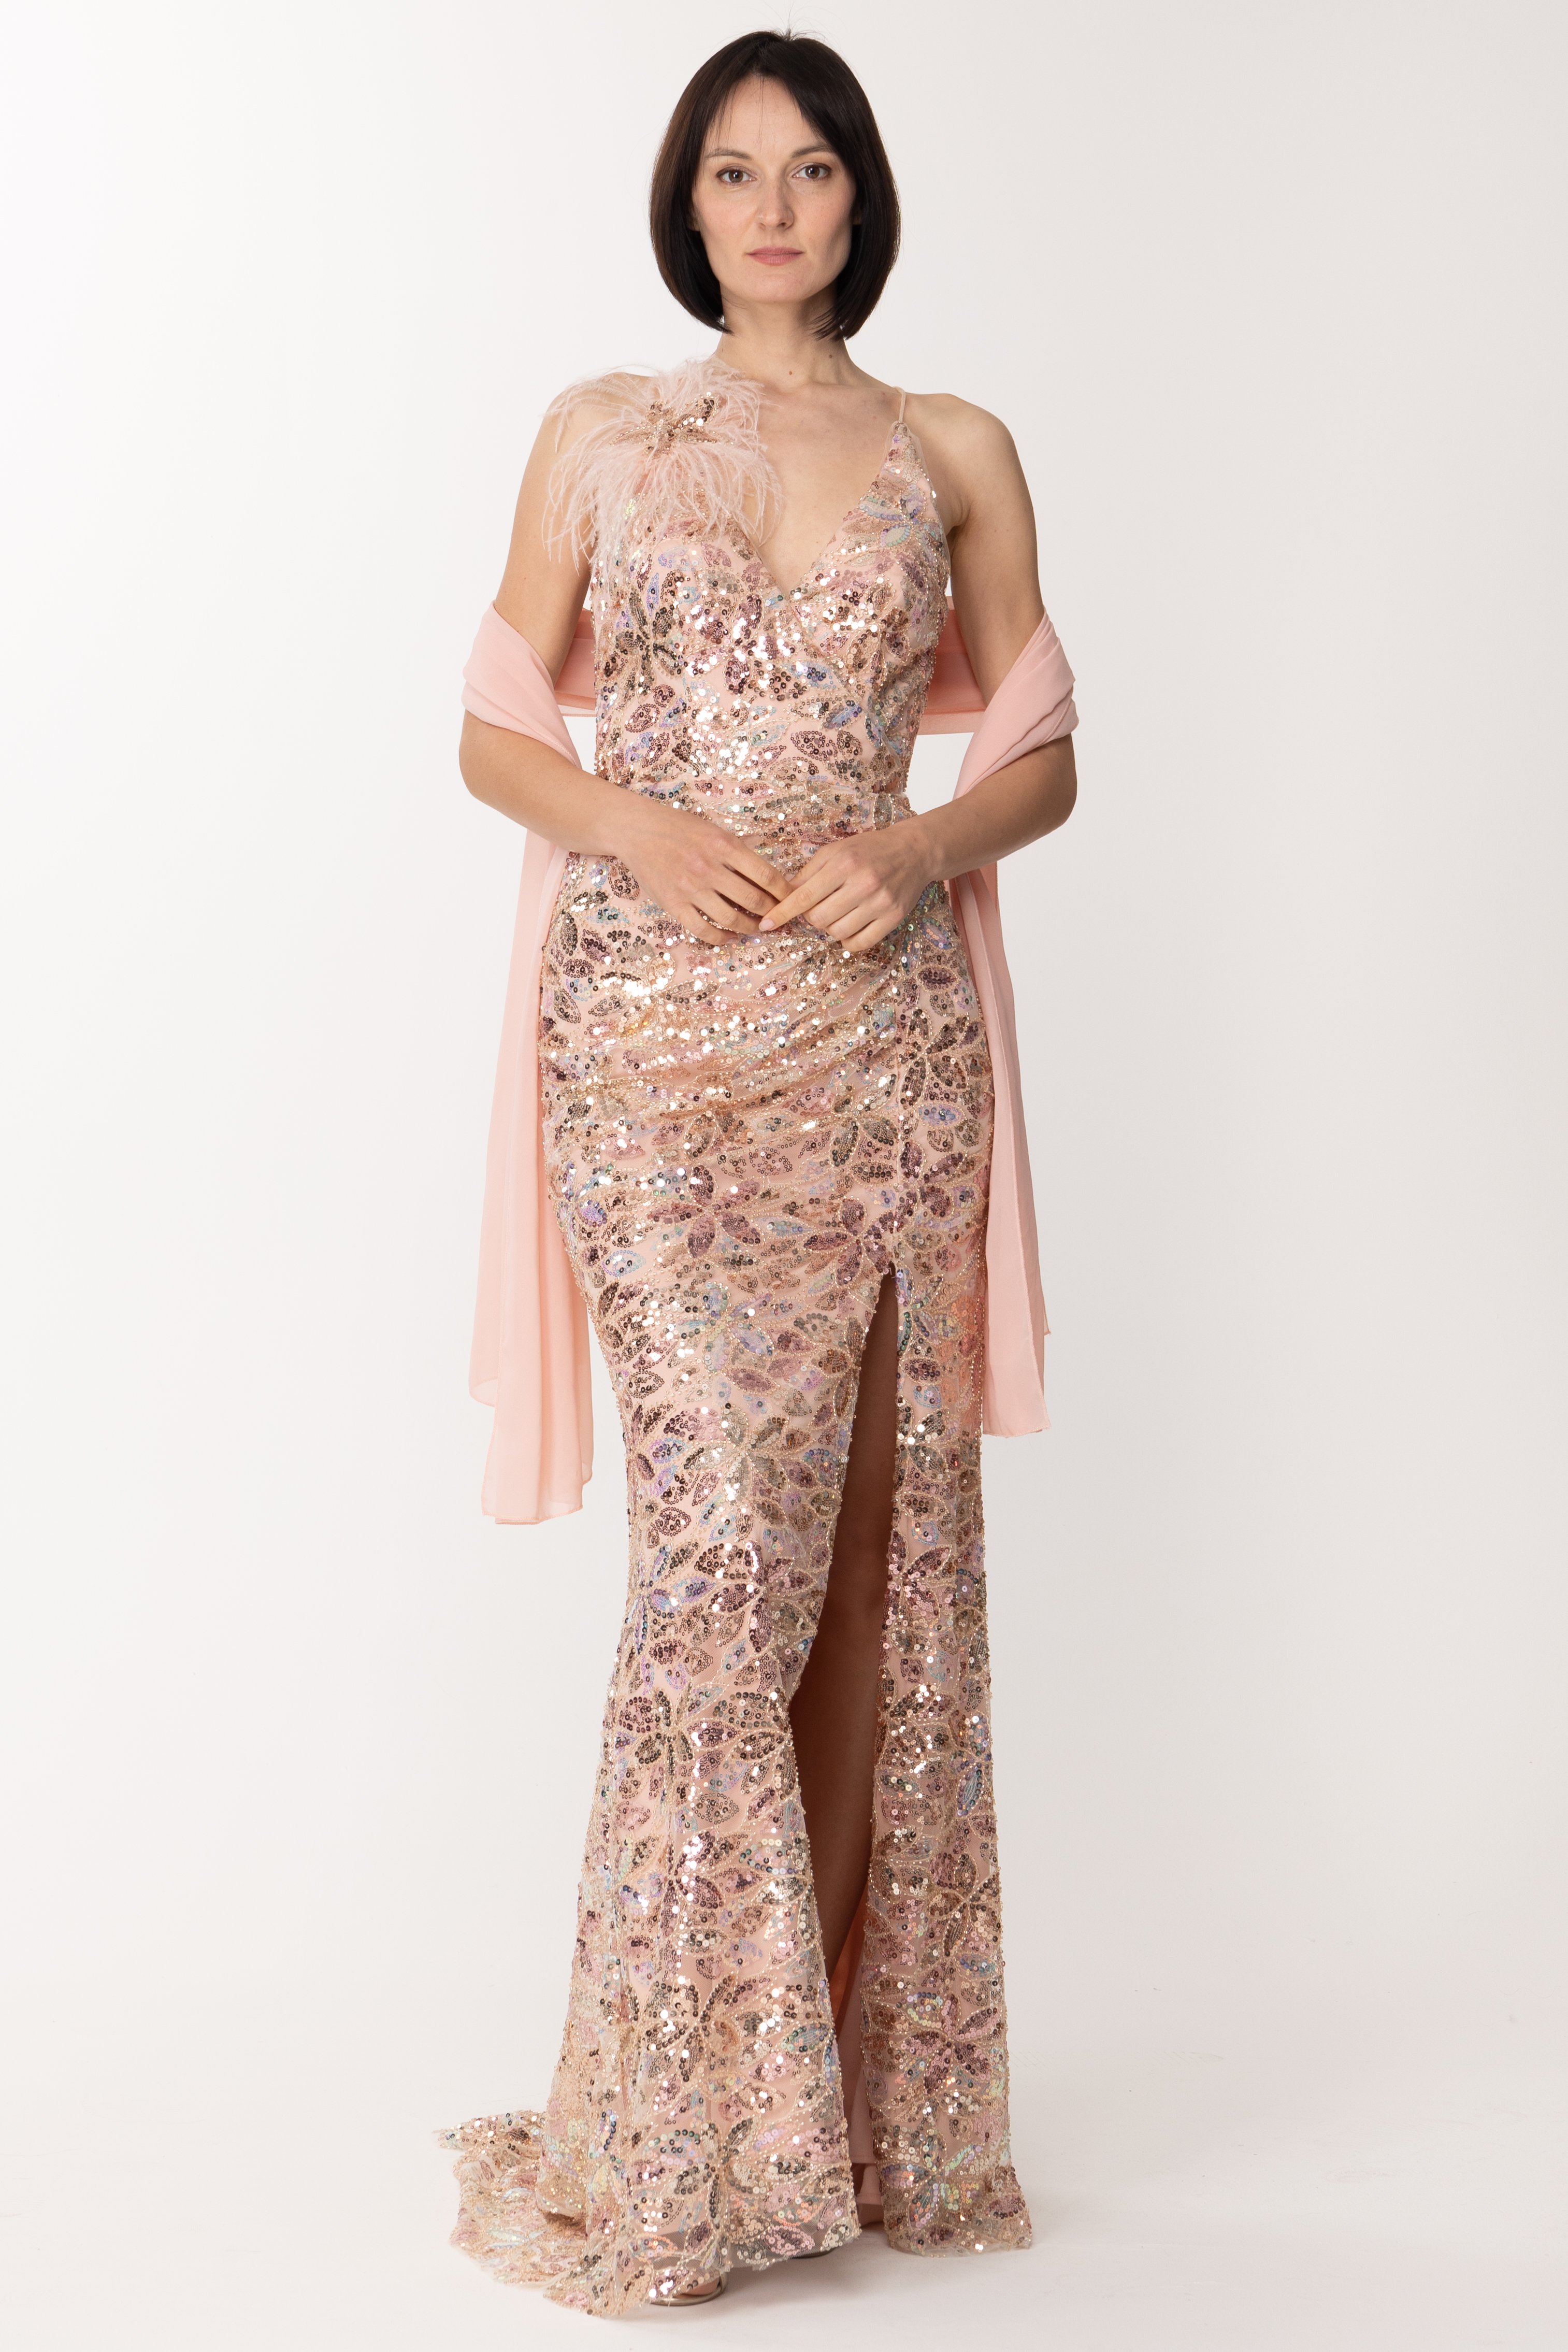 Vorschau: Fabiana Ferri Langes Kleid mit Pailletten und Feder-Accessoire Rosa